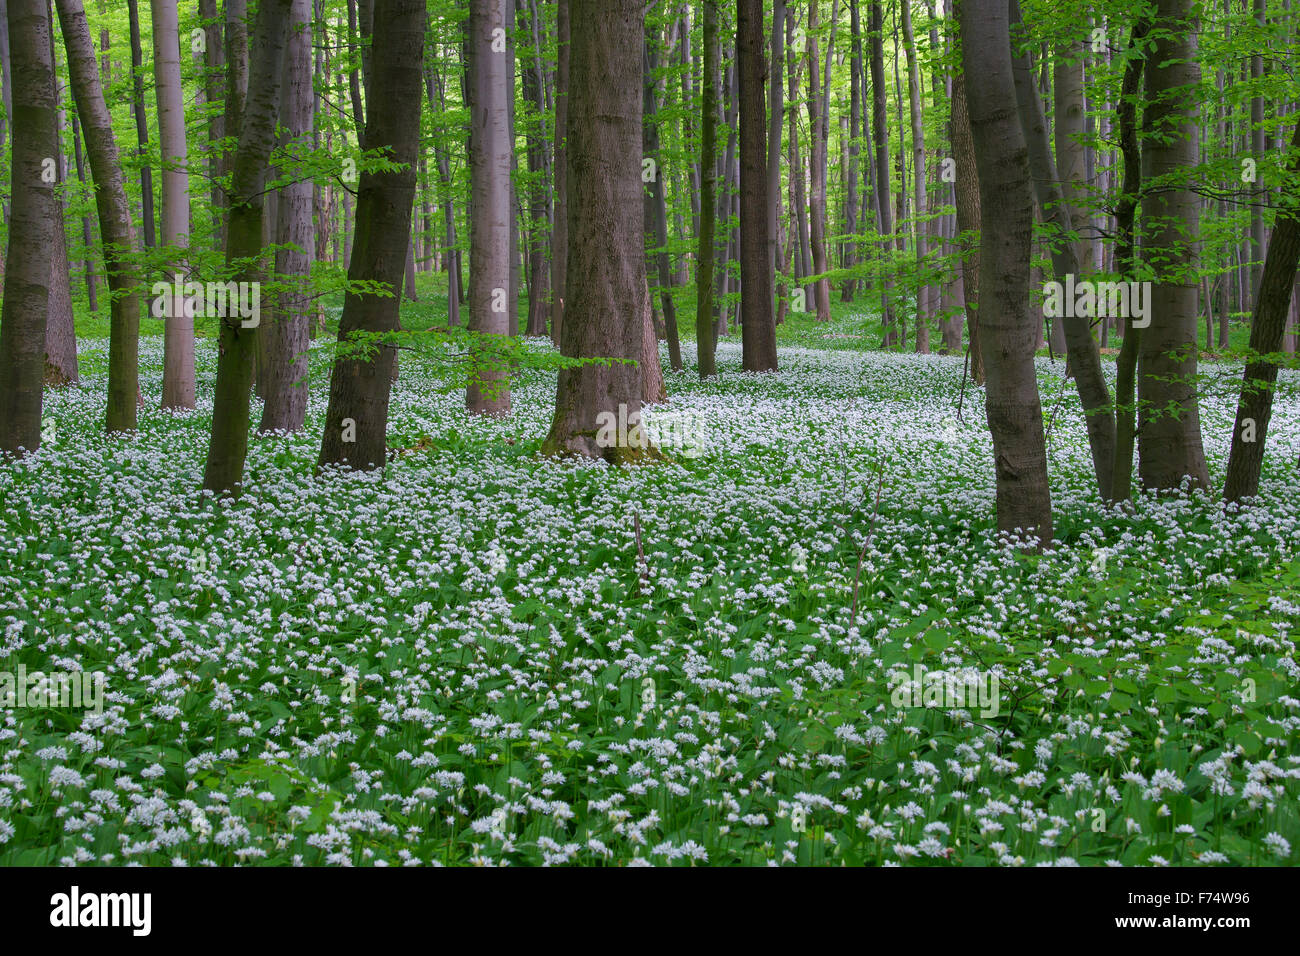 L'ail bois / ramsons / ail sauvage (Allium ursinum) forêt de hêtres en floraison au printemps Banque D'Images